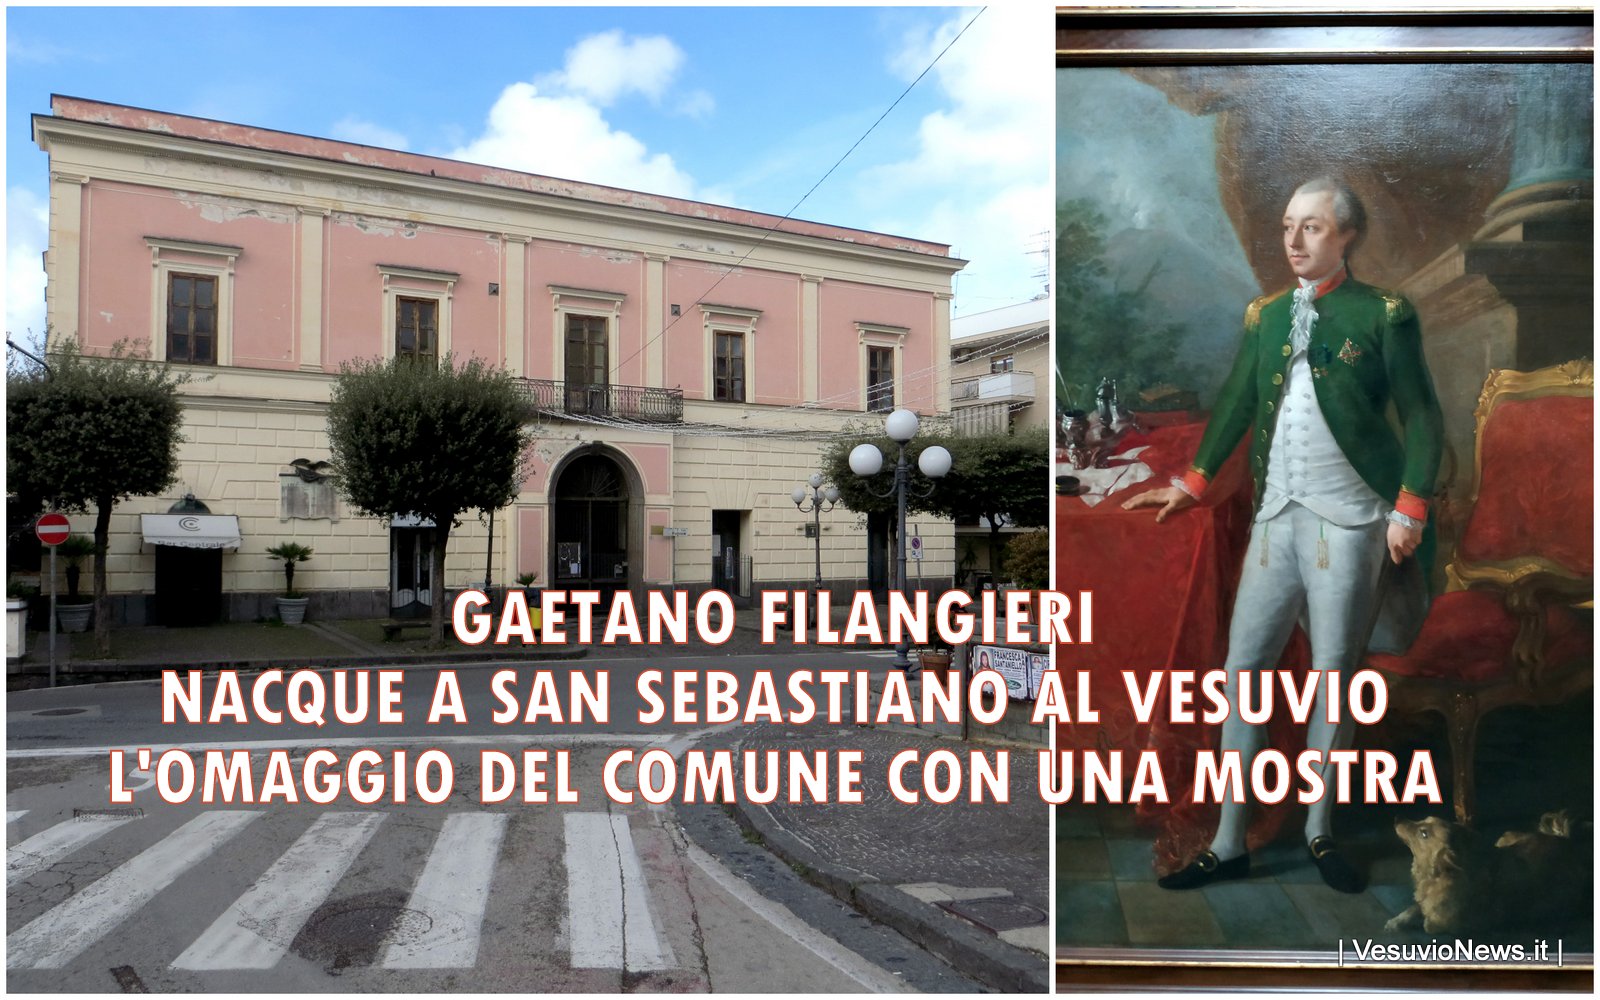 Gaetano Filangieri una mostra ed una intitolazione, così San Sebastiano al Vesuvio omaggia il suo più illustre concittadino a 270 anni dalla nascita